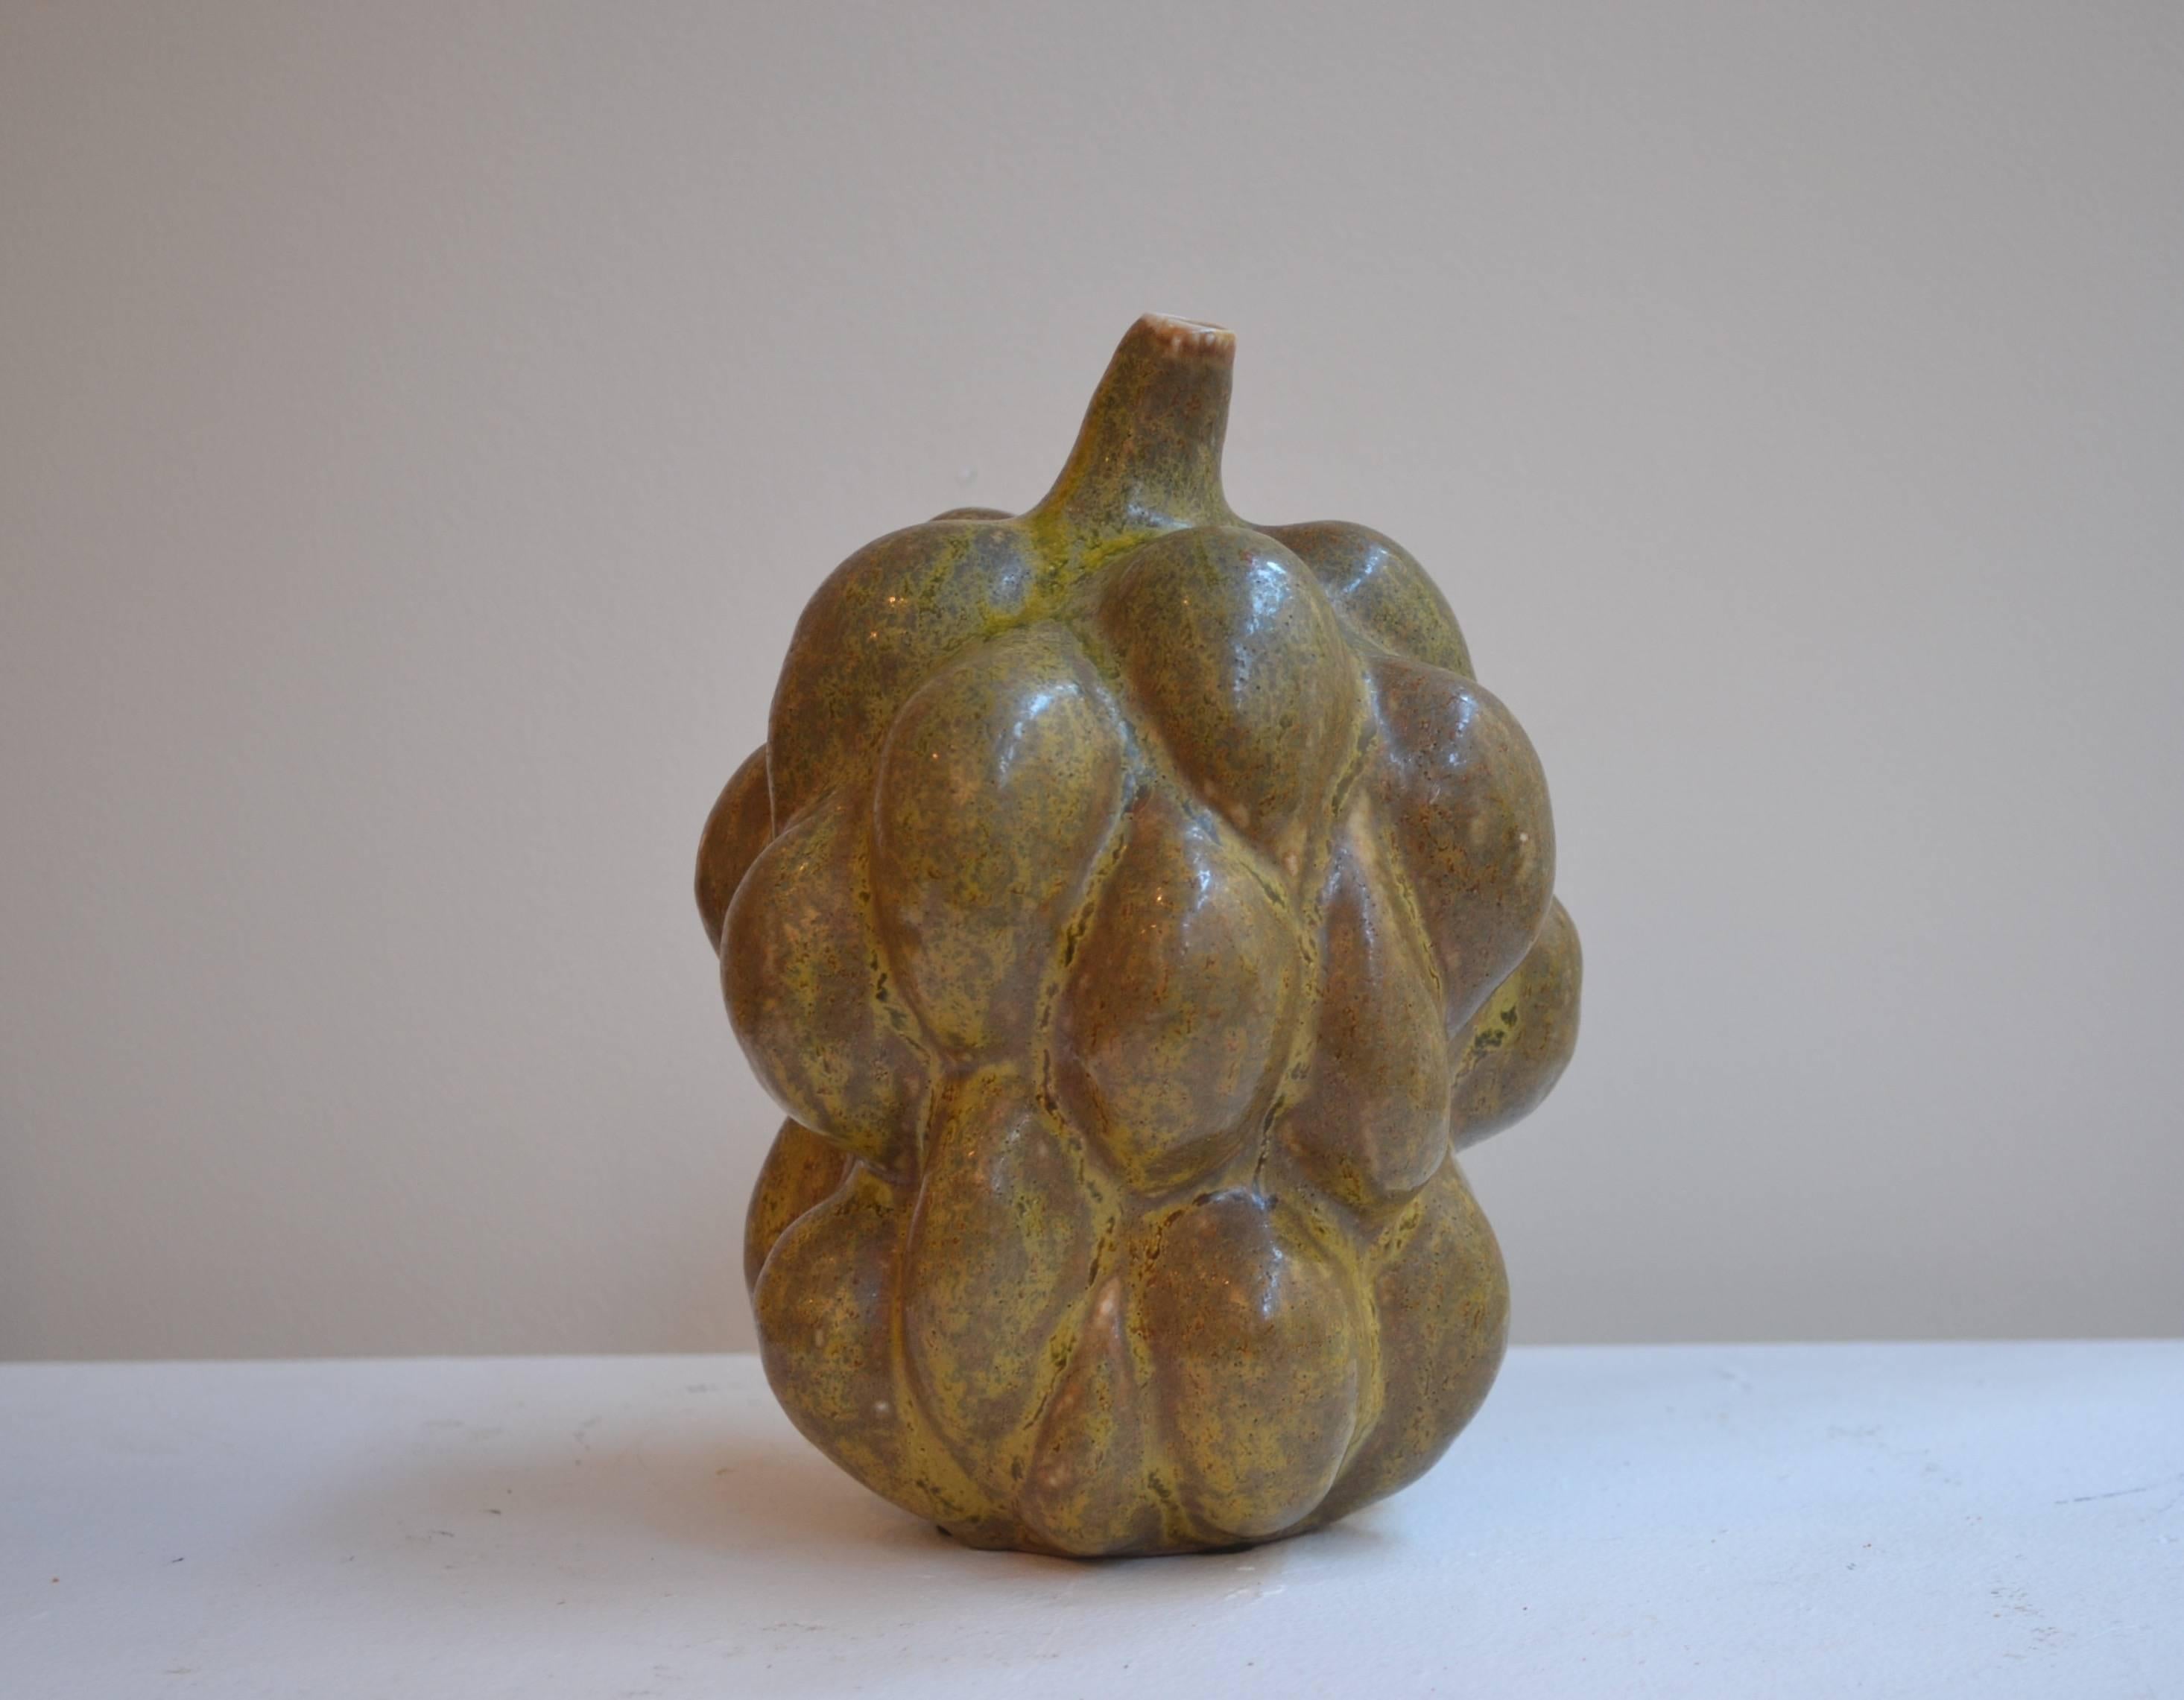 Axel Salto rare fruit form vase with stem in solfatara glaze. Made by Royal Copenhagen, Denmark, circa 1955. 
Measure: 8.50